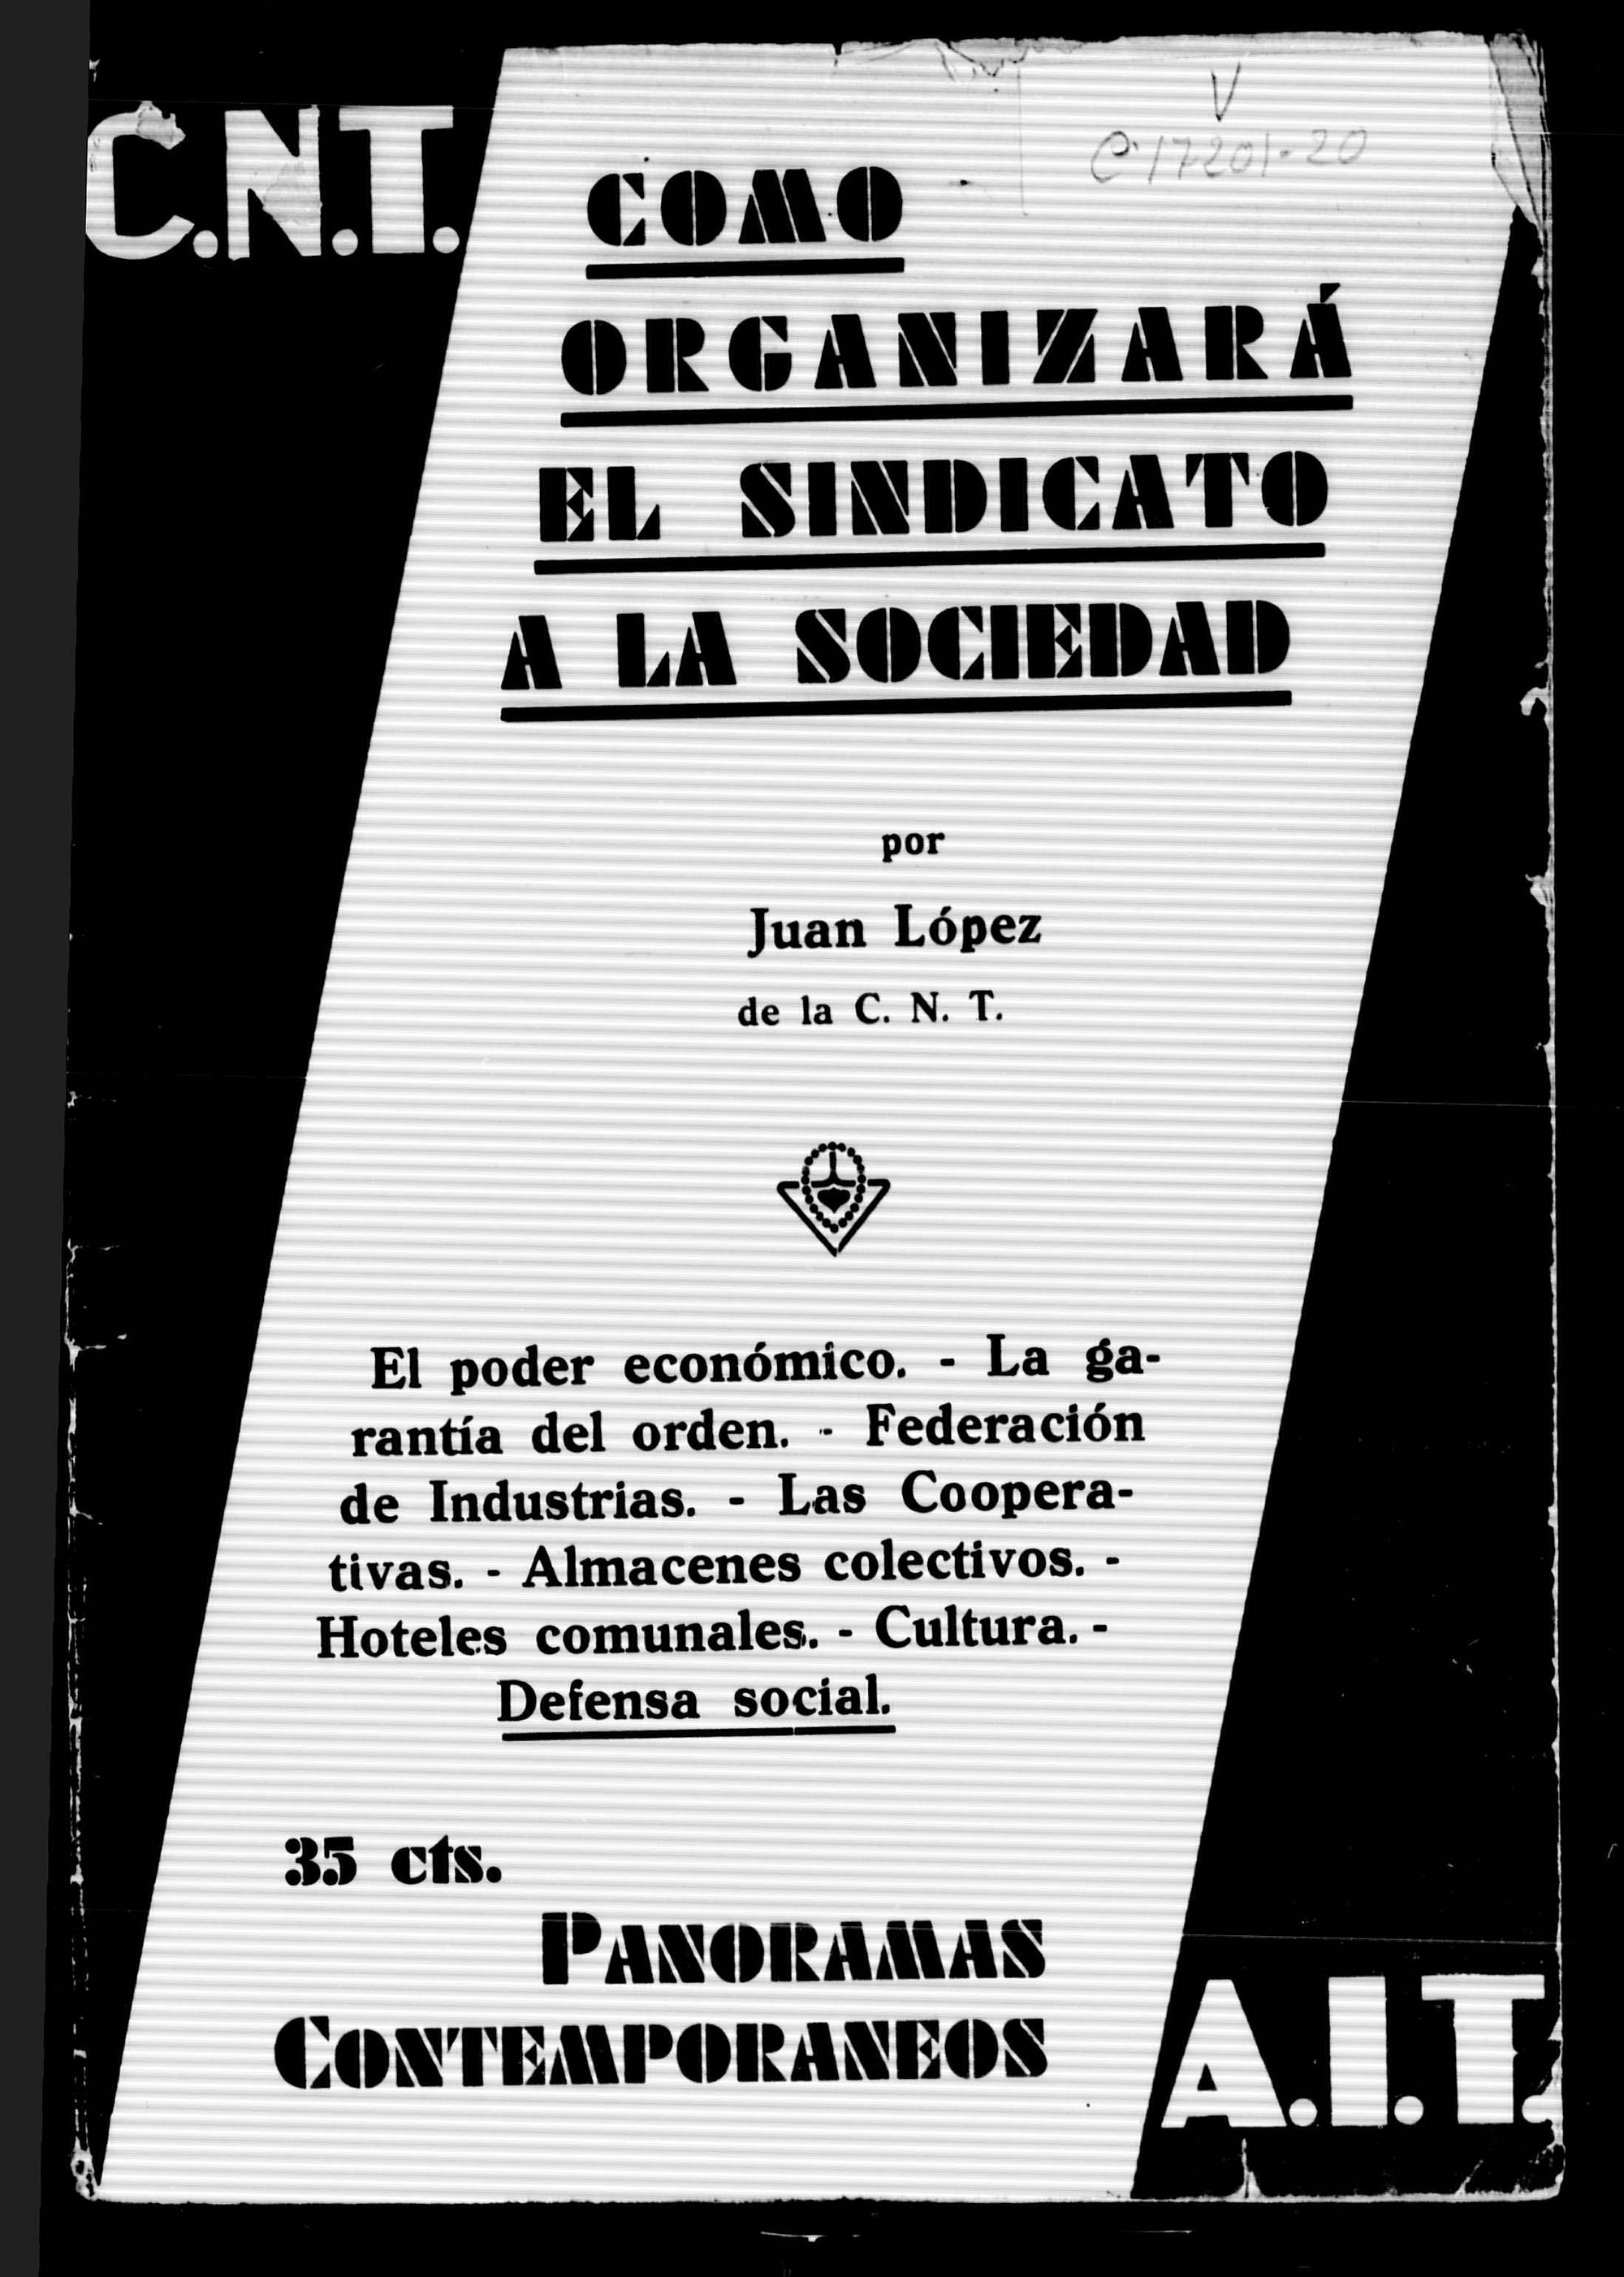 Como organizará el sindicato a la sociedad / por Juan López. Barcelona: Ediciones populares, [193?], 15 p.; 25 cm.- (Colección: Panoramas contemporáneos. Segunda serie; fasc. 7)Cámara